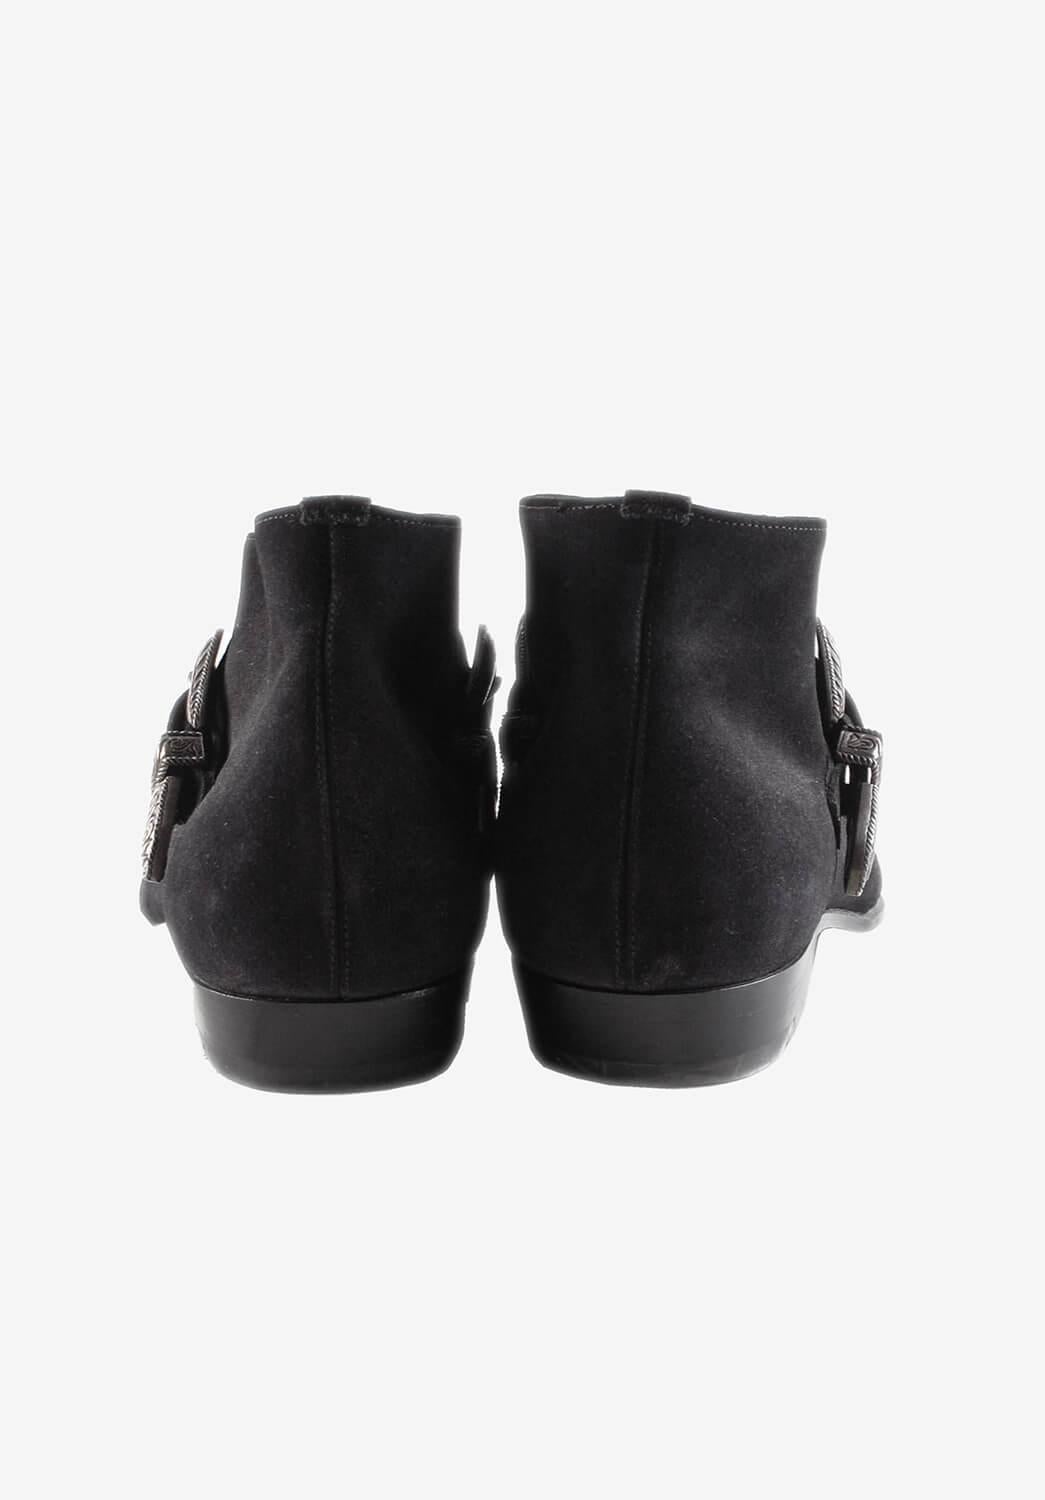 Black Saint Laurent Suede Leather Boots Buckle Men Duckies Shoes Size 44EUR, USA10 For Sale